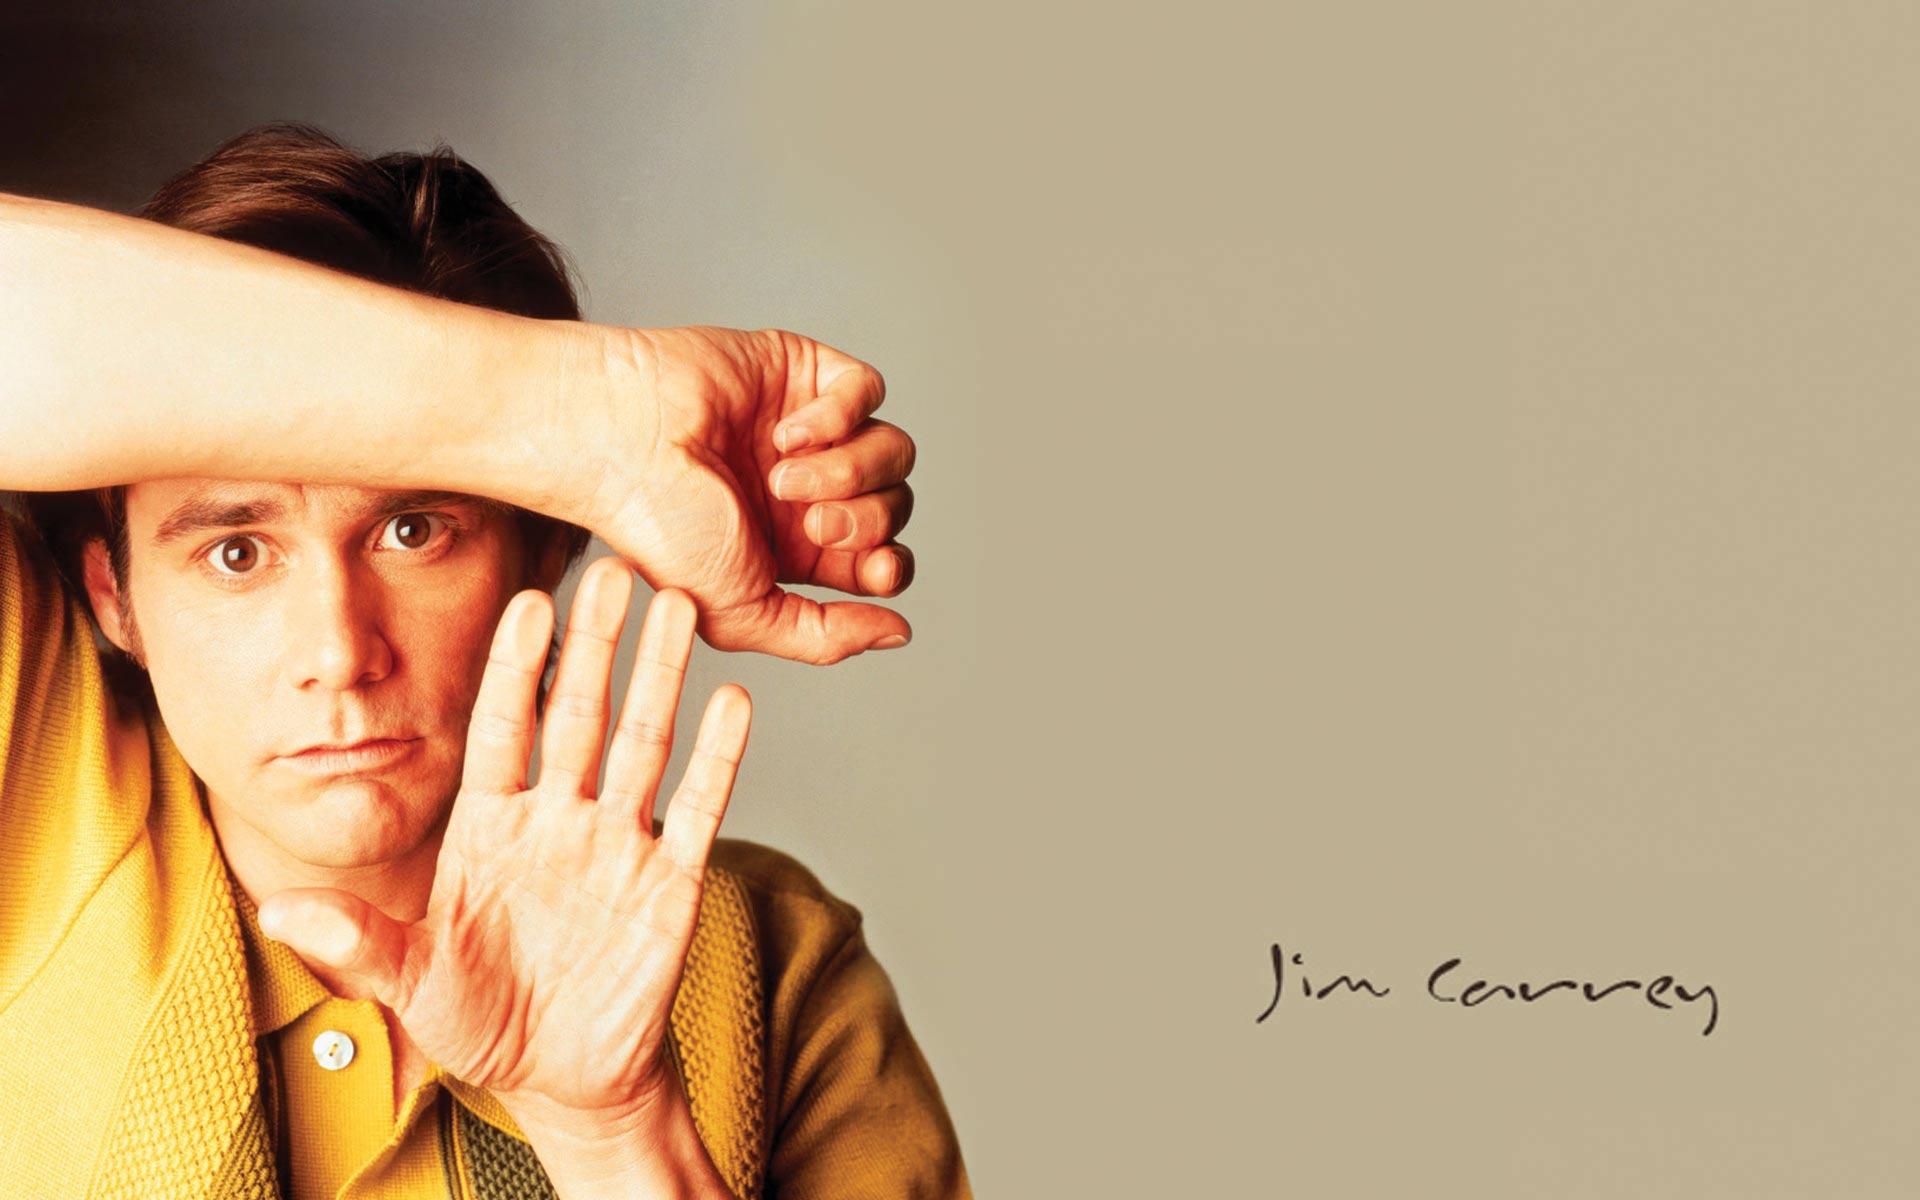 جیم کری (Jim Carrey)